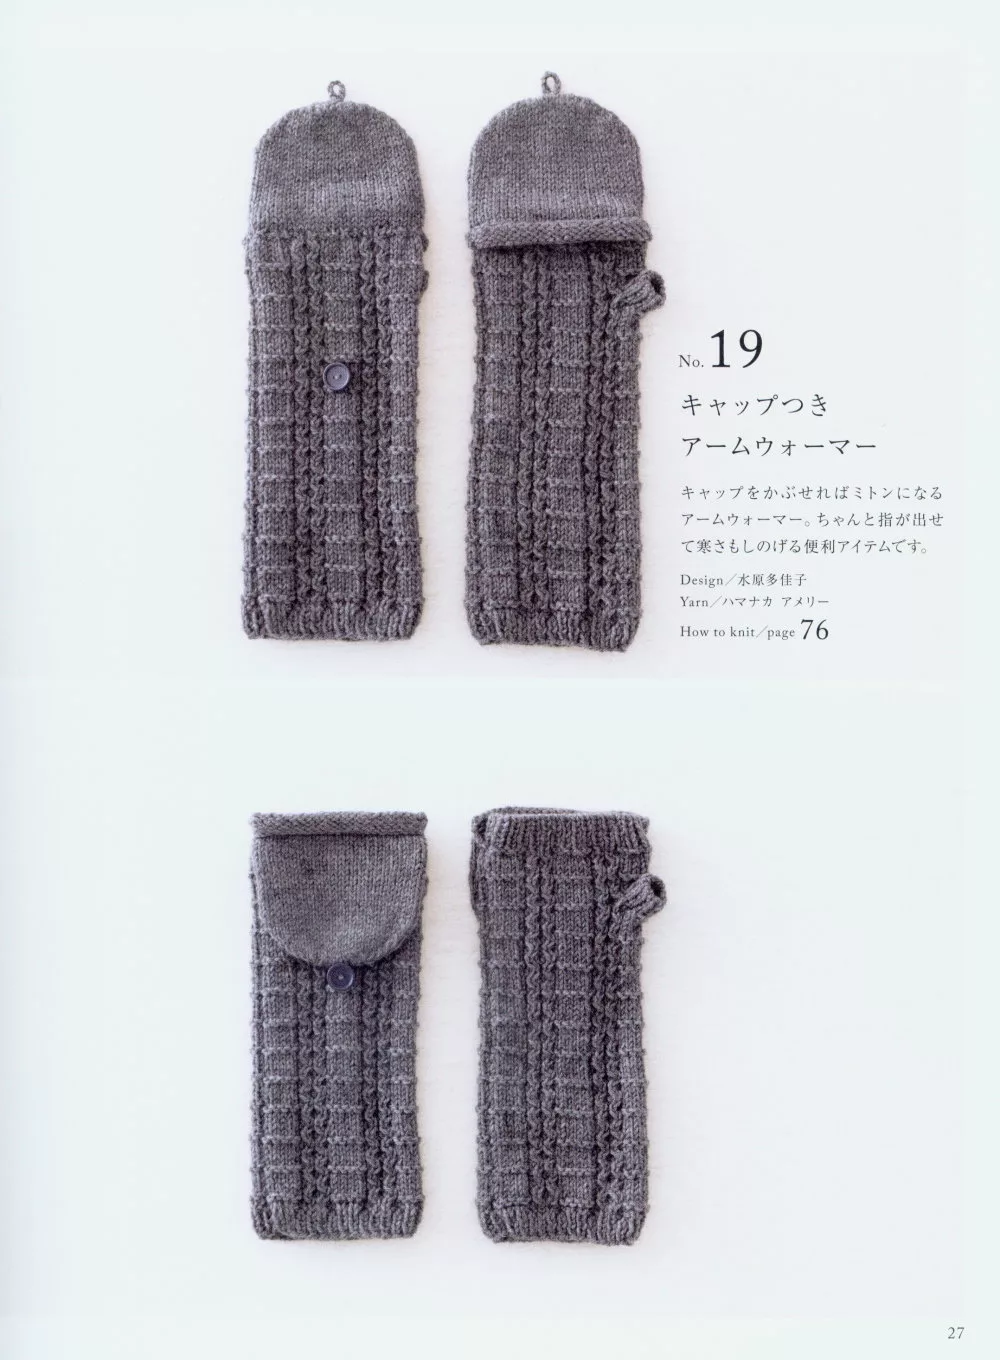 特殊造型手套設計